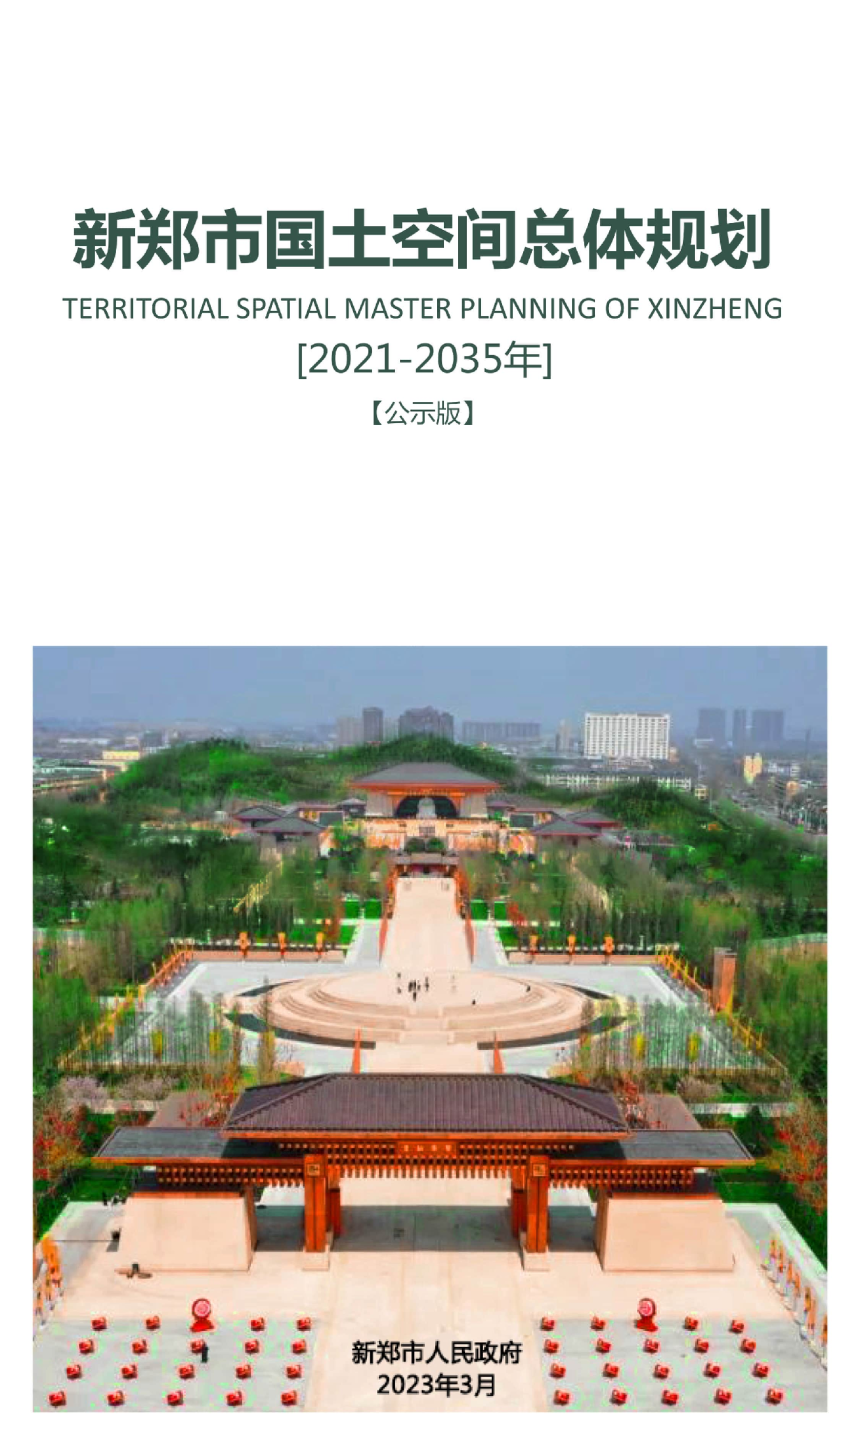 河南省新郑市国土空间总体规划（2021-2035年）-1